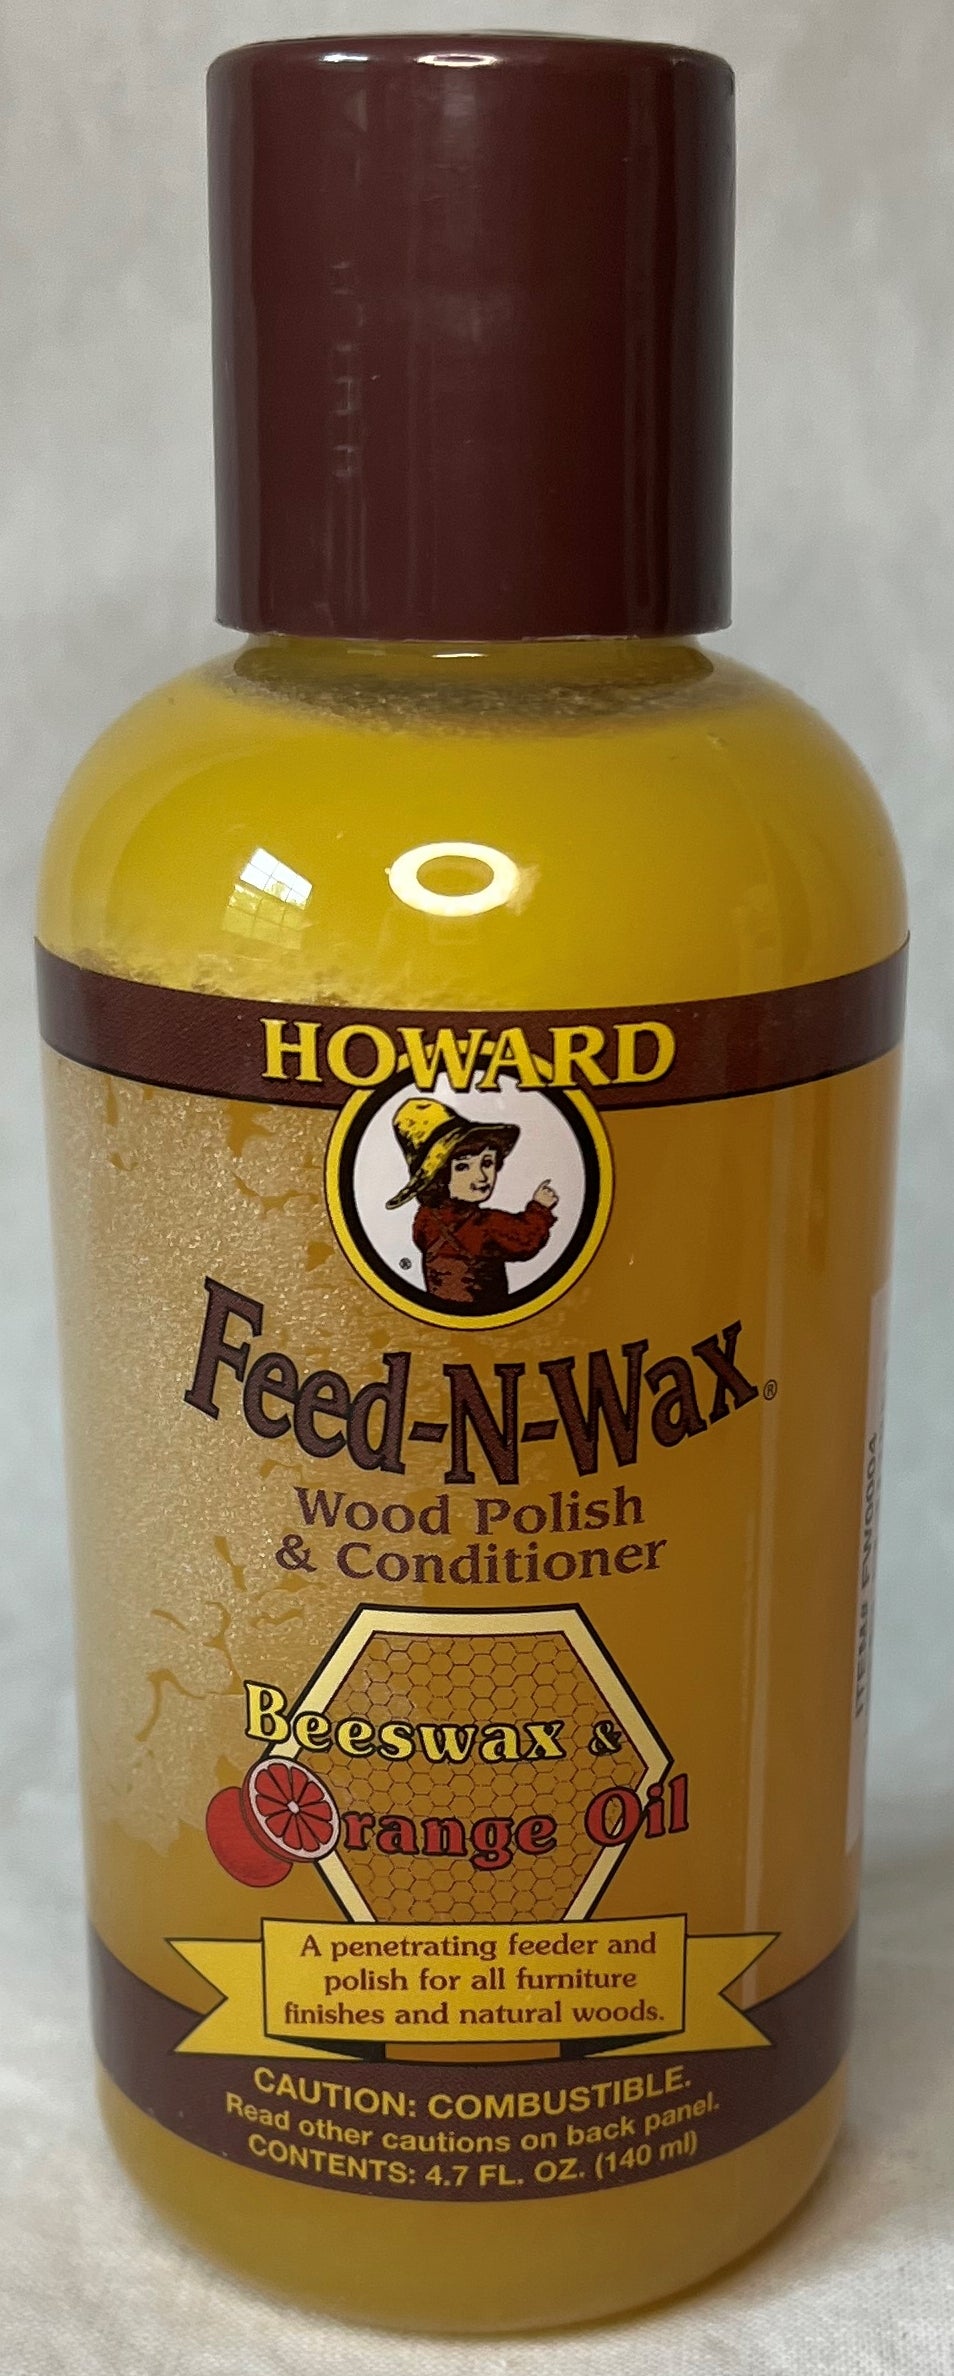 Howard's Feed-N-Wax Wood Polish & Conditioner